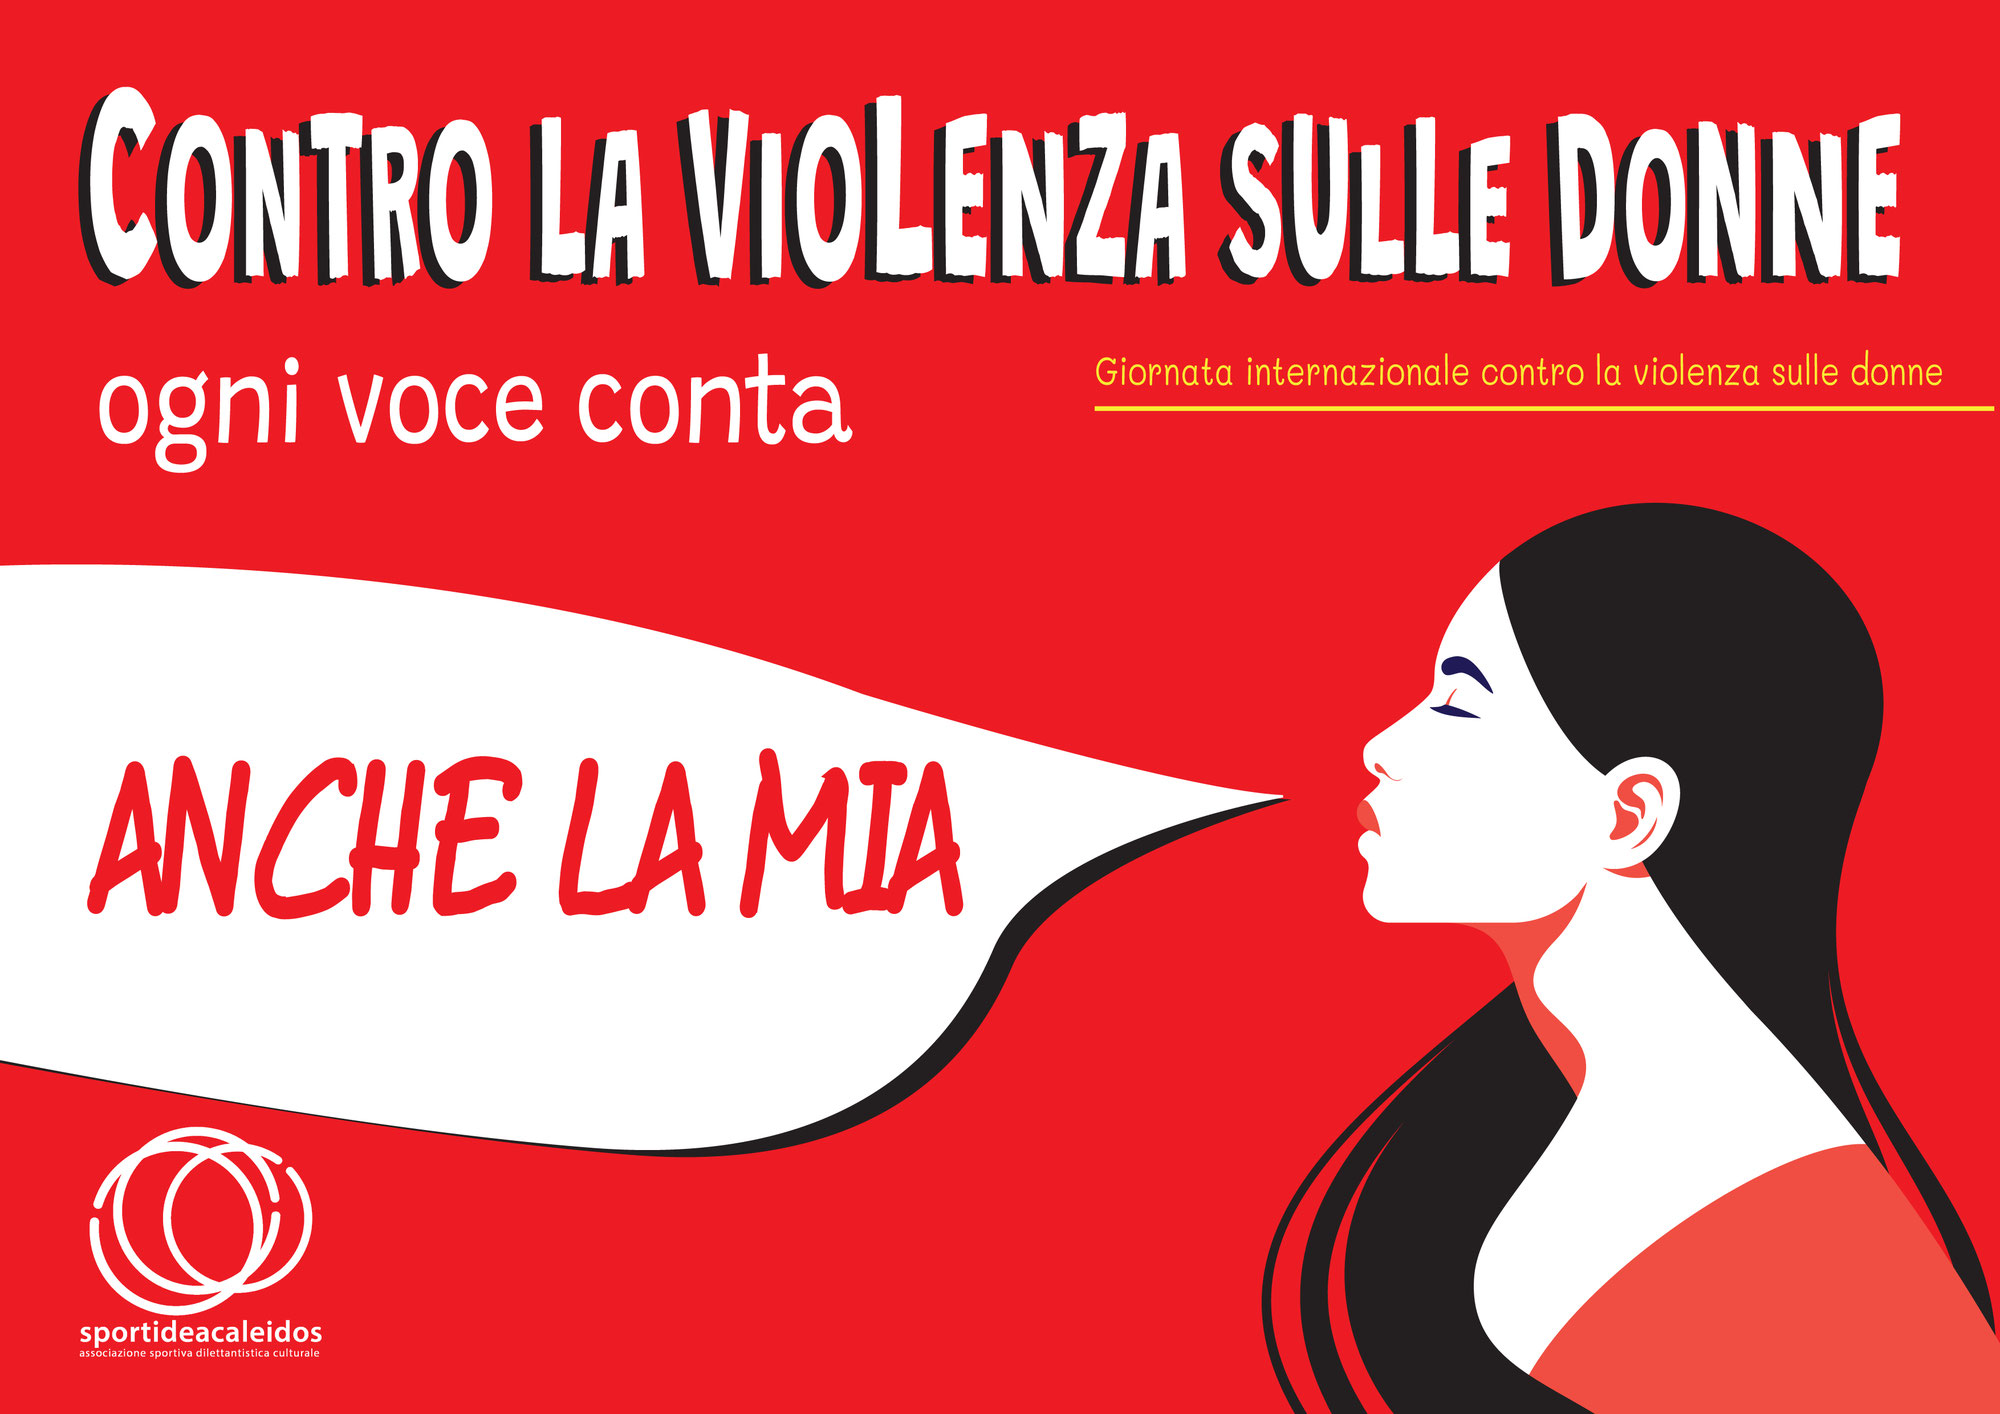 22 novembre: "Contro la violenza sulle donne ogni voce conta"